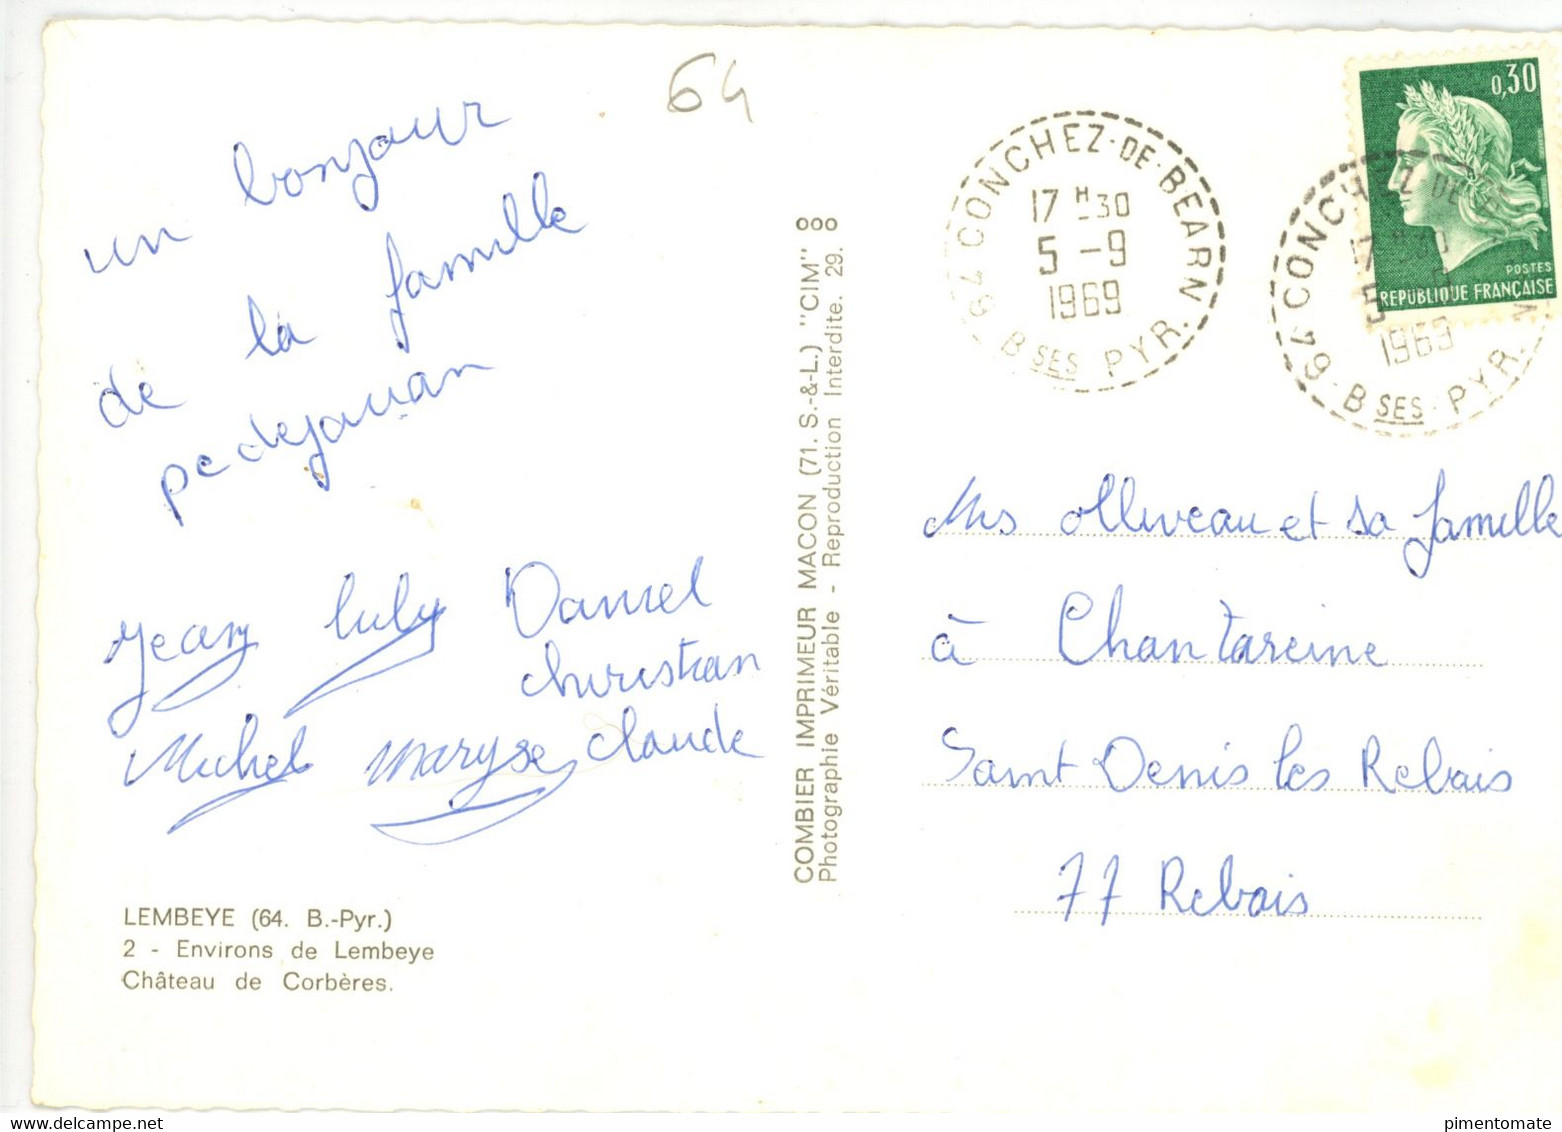 LEMBEYE CHATEAU DE CORBERES 1969 - Lembeye